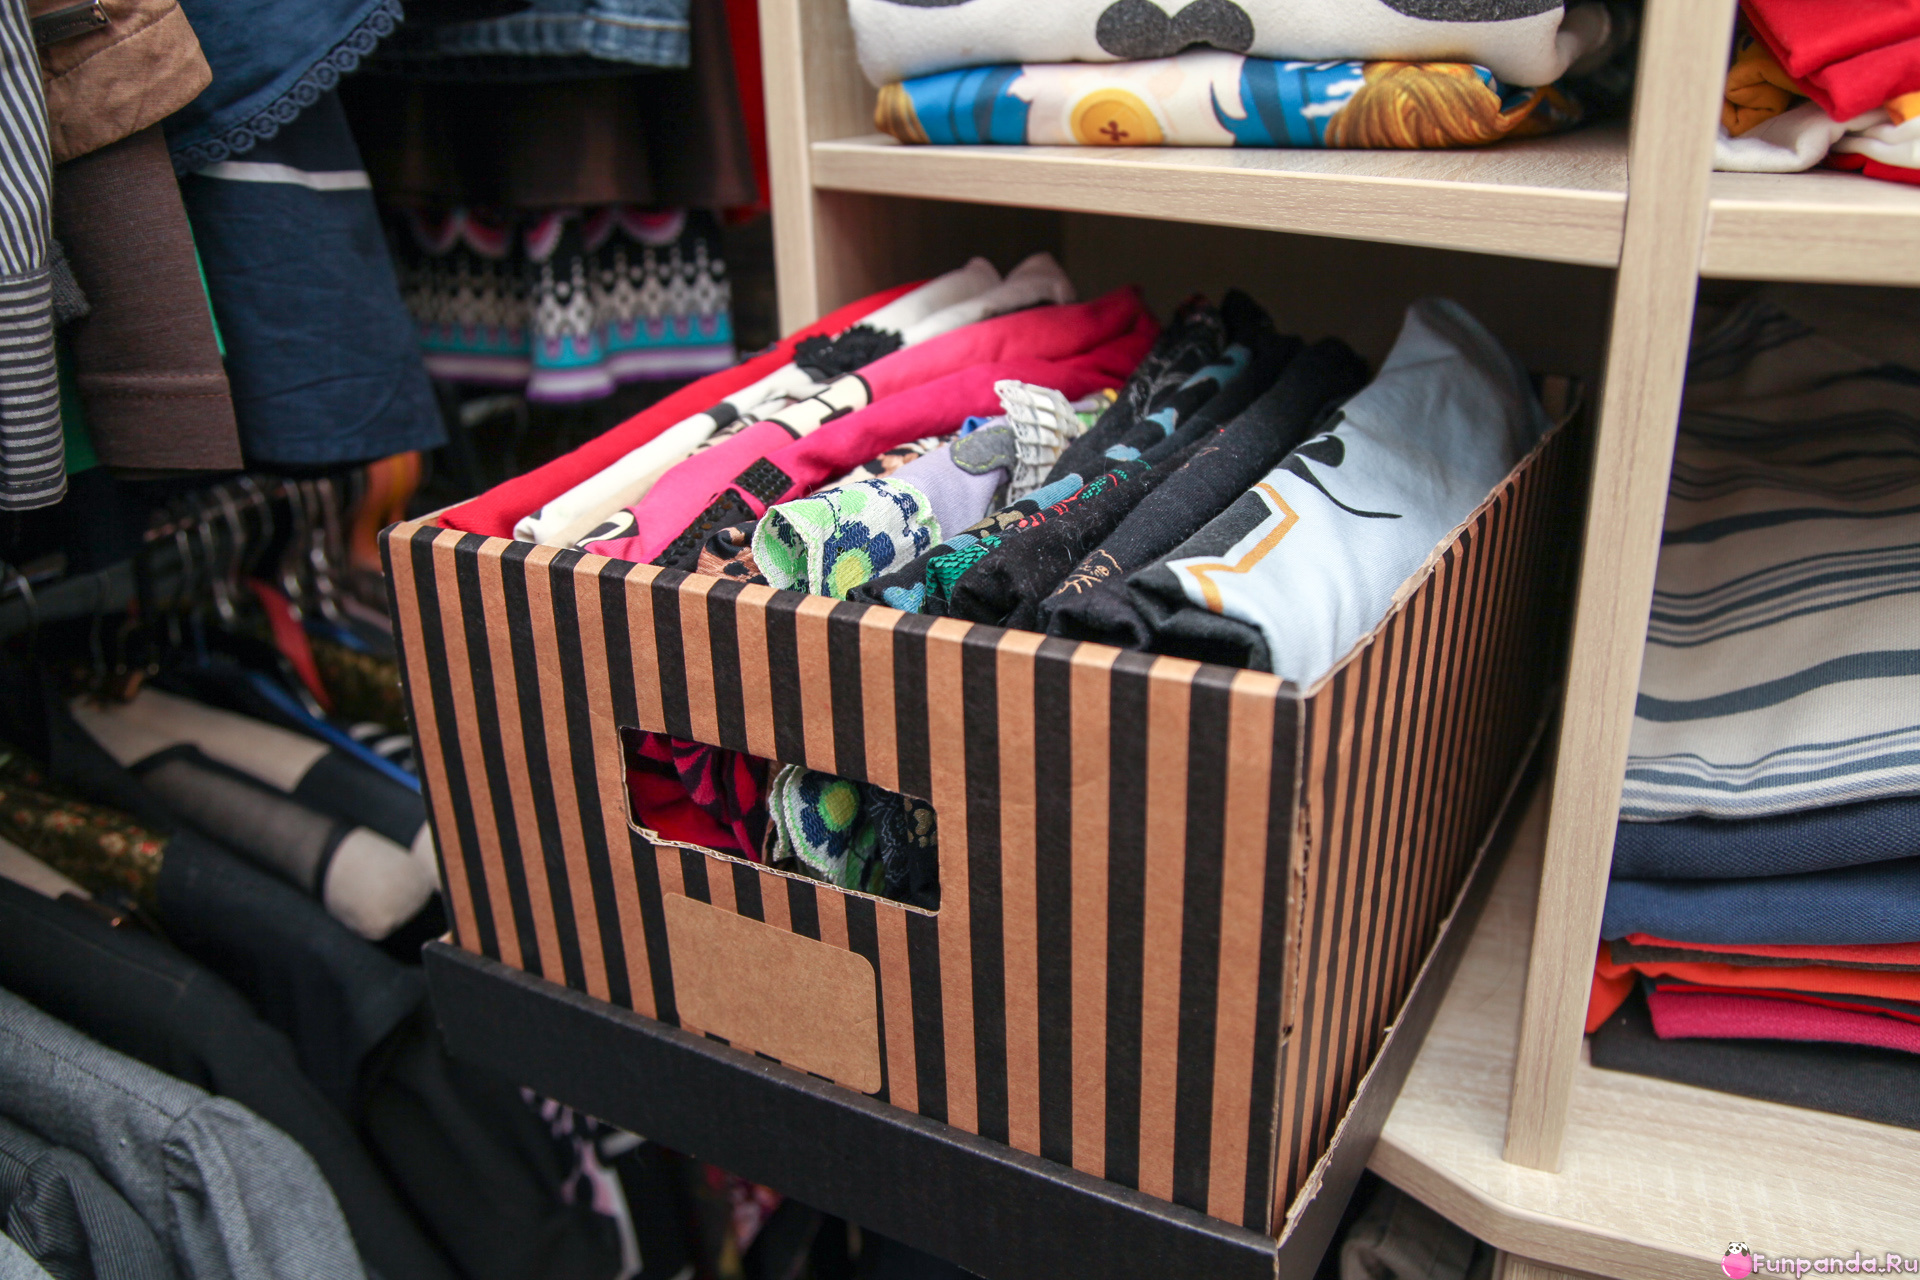 вертикальное хранение одежды на полках в шкафу